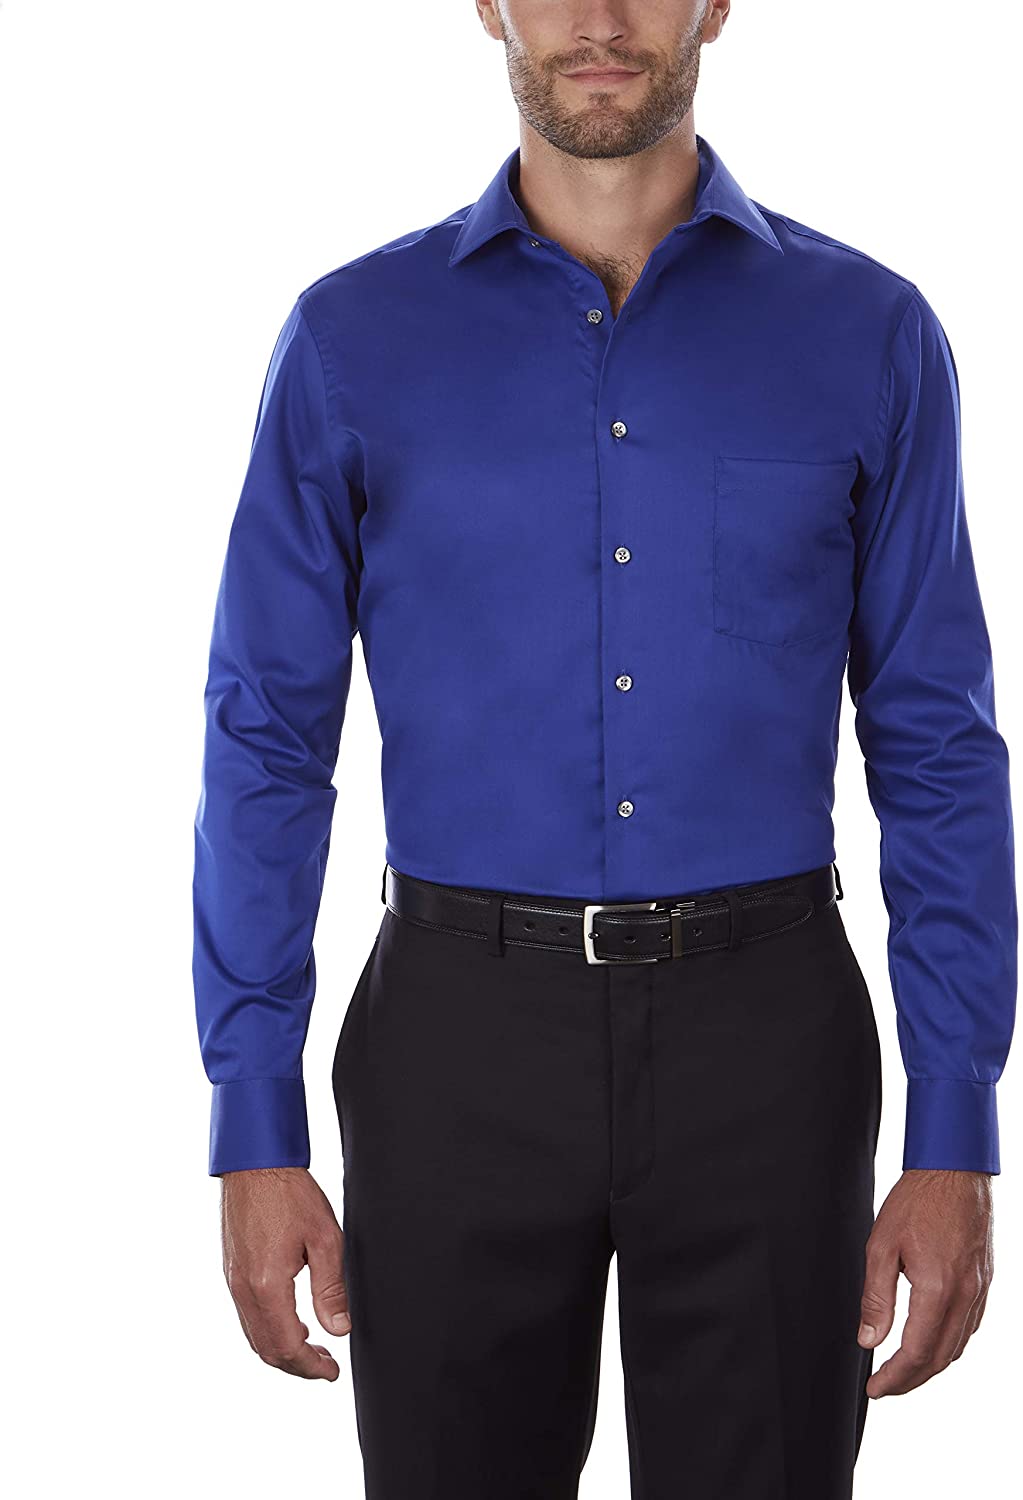 Van Heusen Men's Dress Shirt Regular Fit Flex Collar, Royal Blue, Size